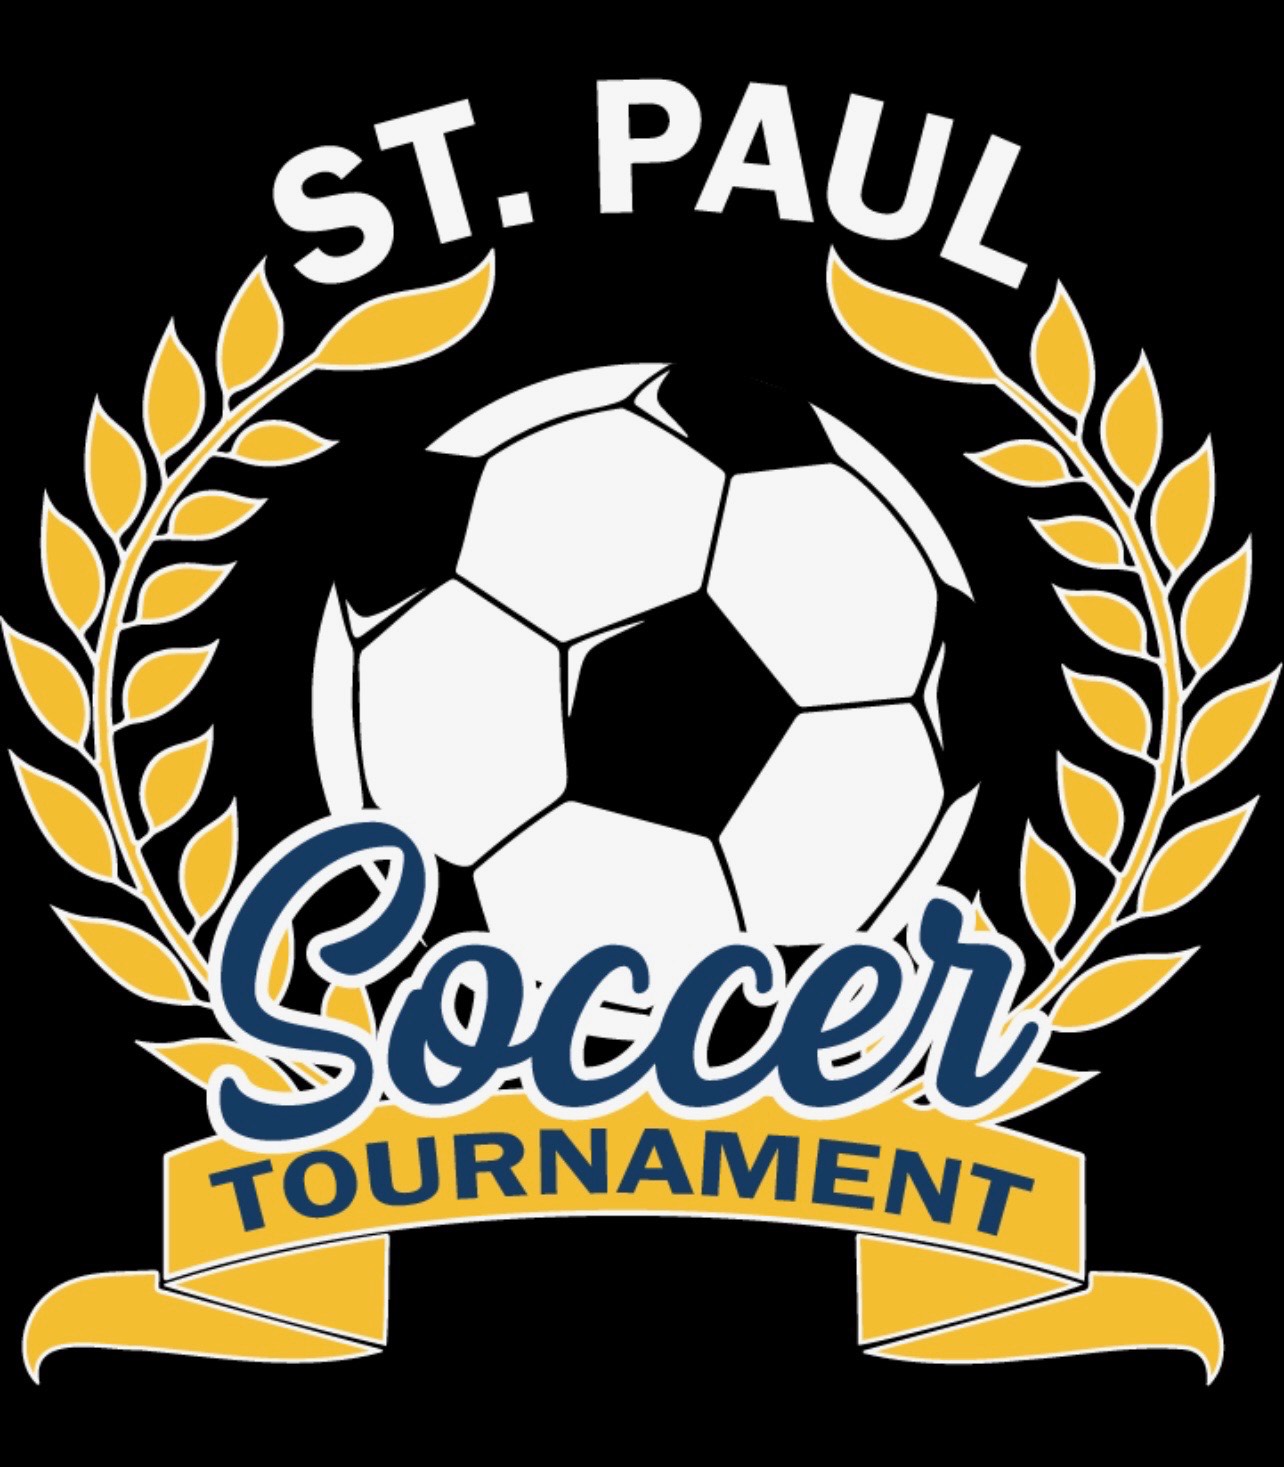 St Paul Soccer Tournament Logo